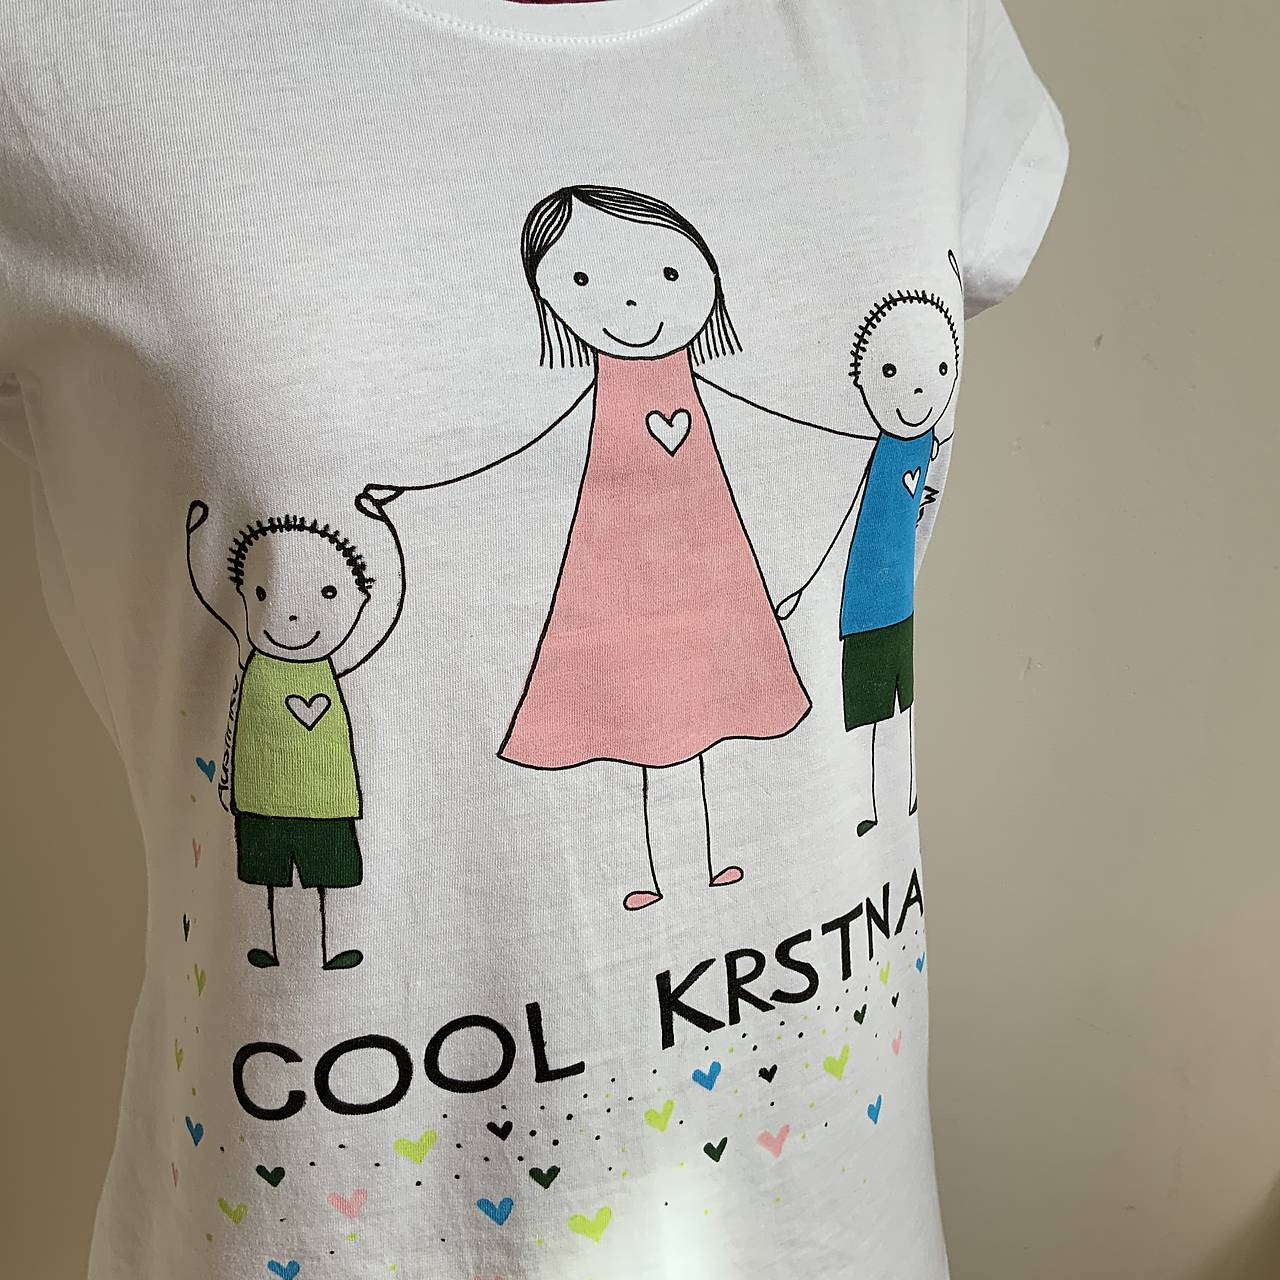 Originálne maľované tričko s 3 postavičkami (krstná + 2 chlapci)